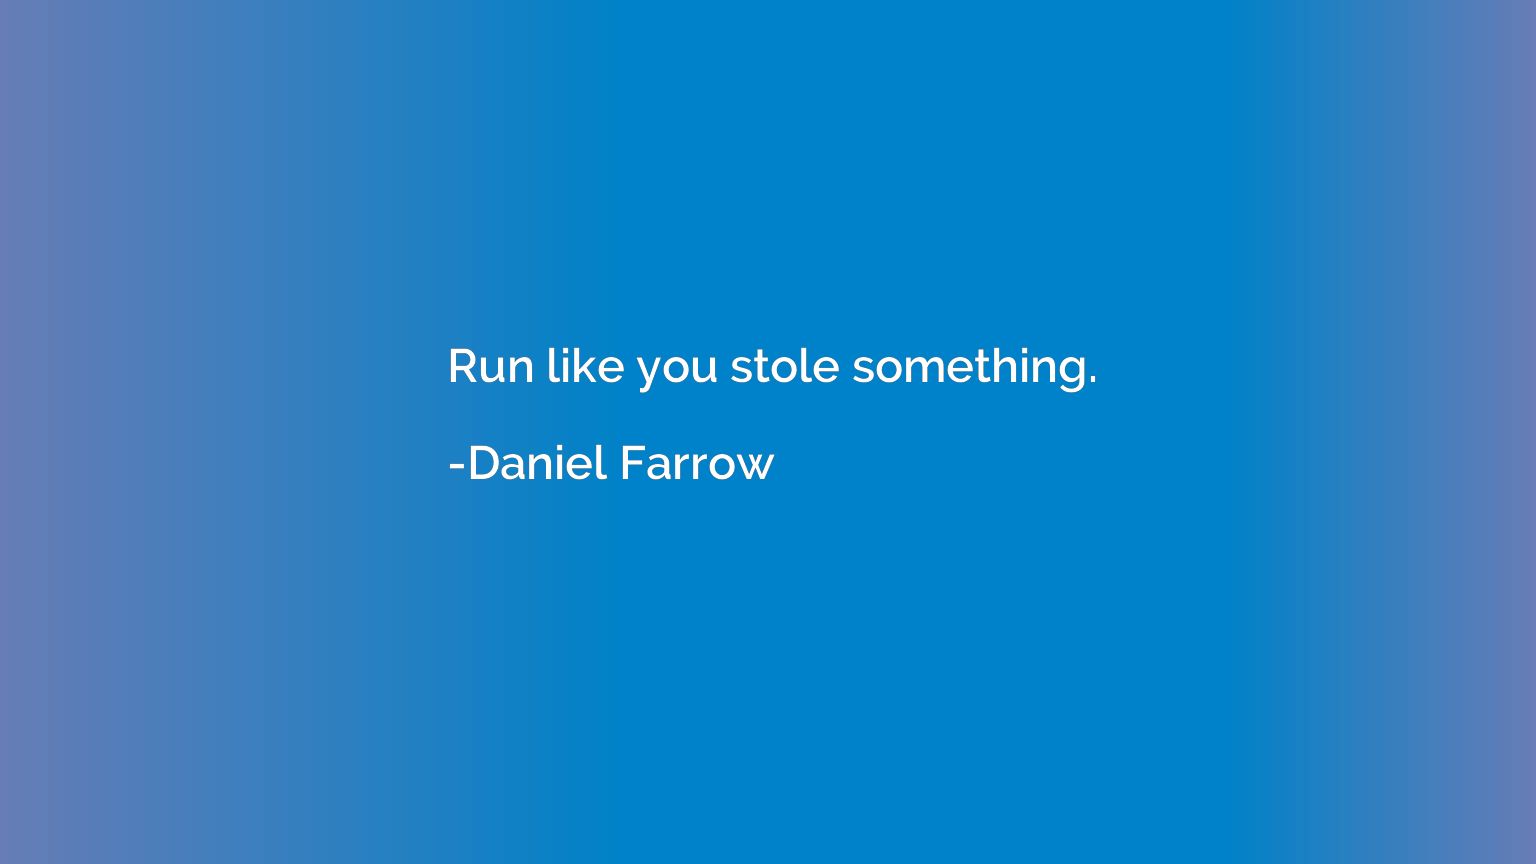 Run like you stole something.